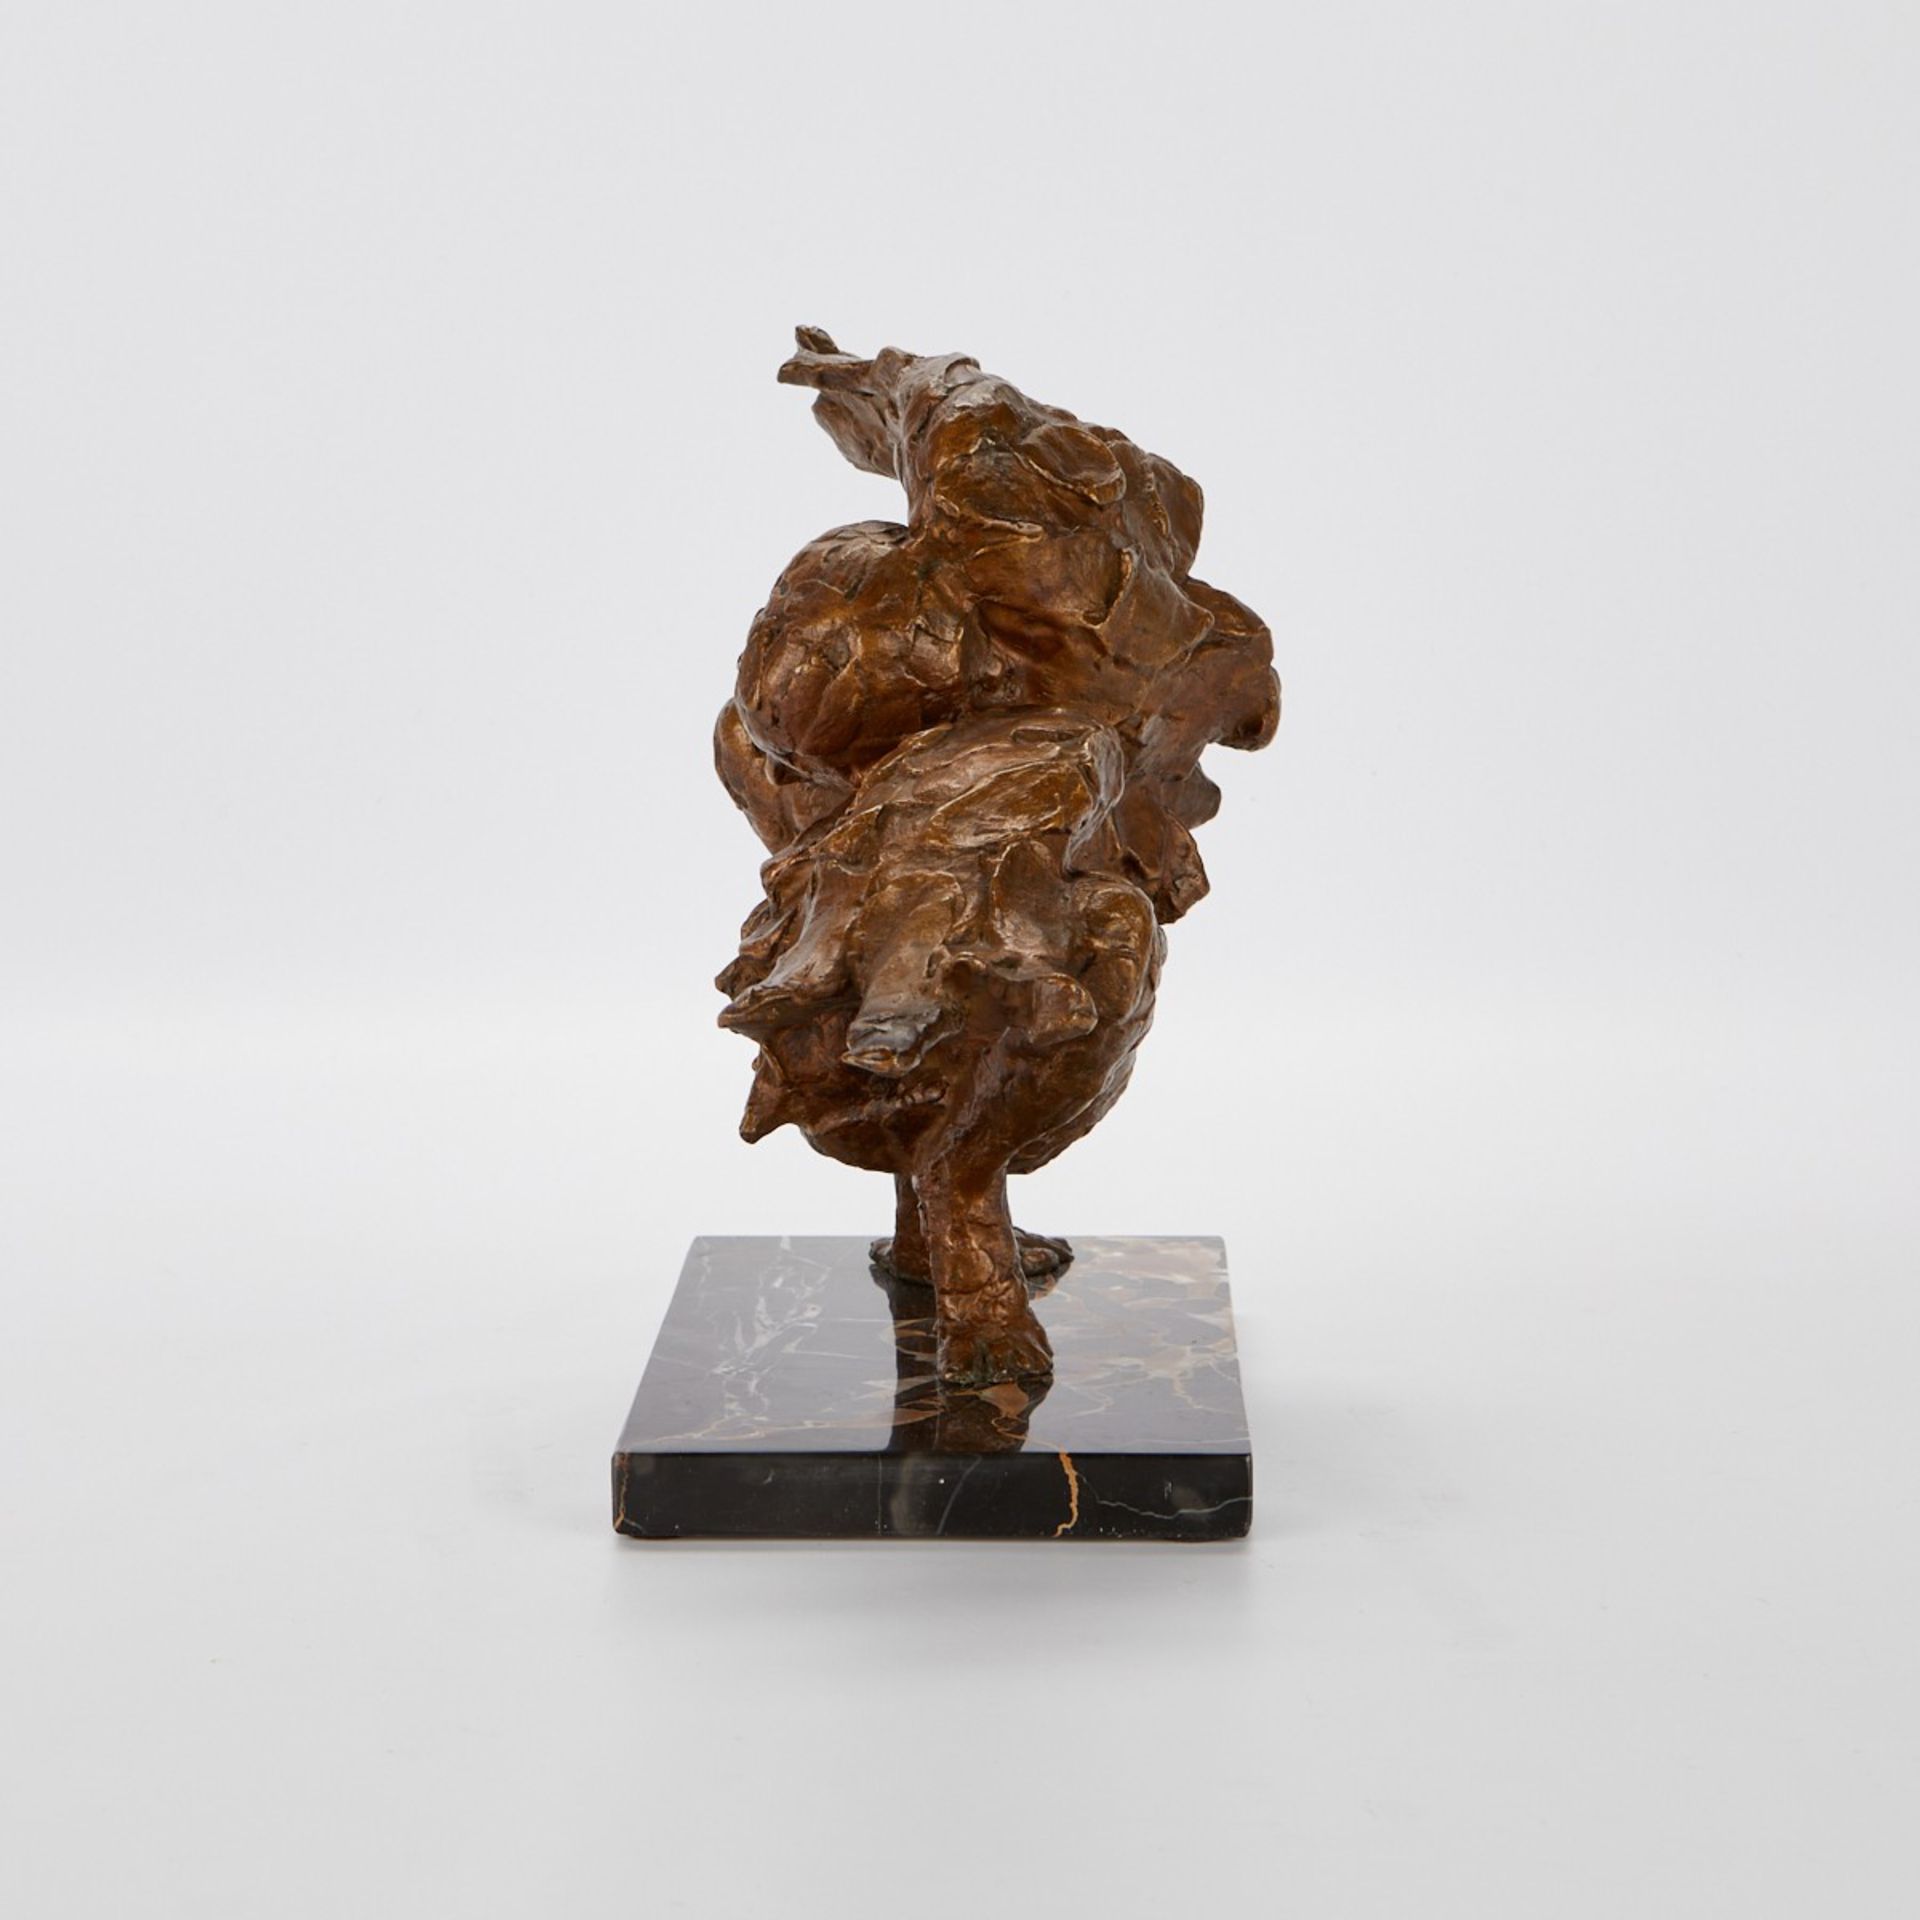 Paul Granlund "Sleeping Phoenix" Bronze Sculpture - Image 6 of 9